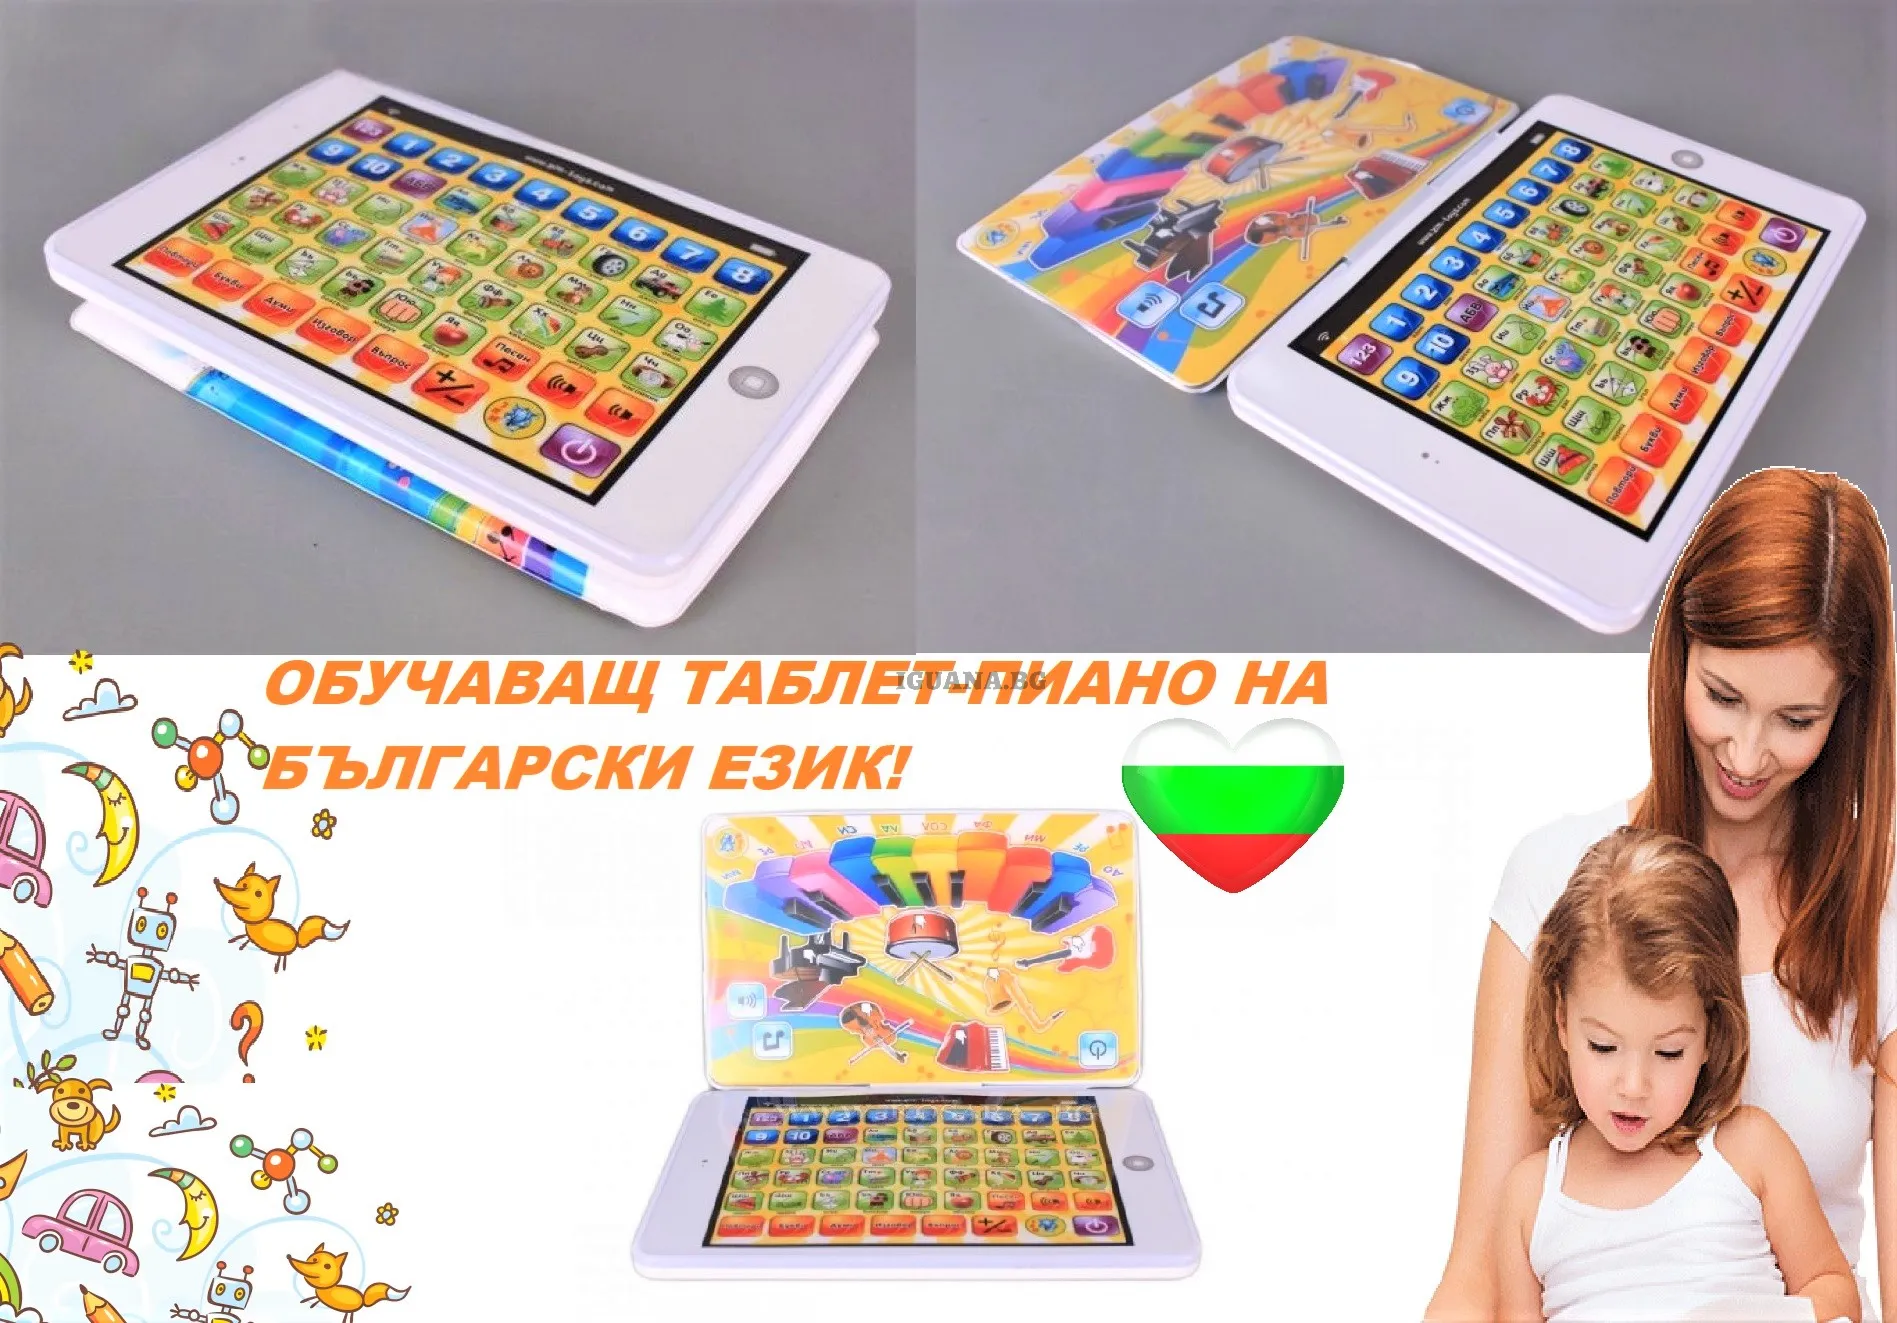 Образователен Таблет - Пиано 2в1 на български език, с два екрана 2